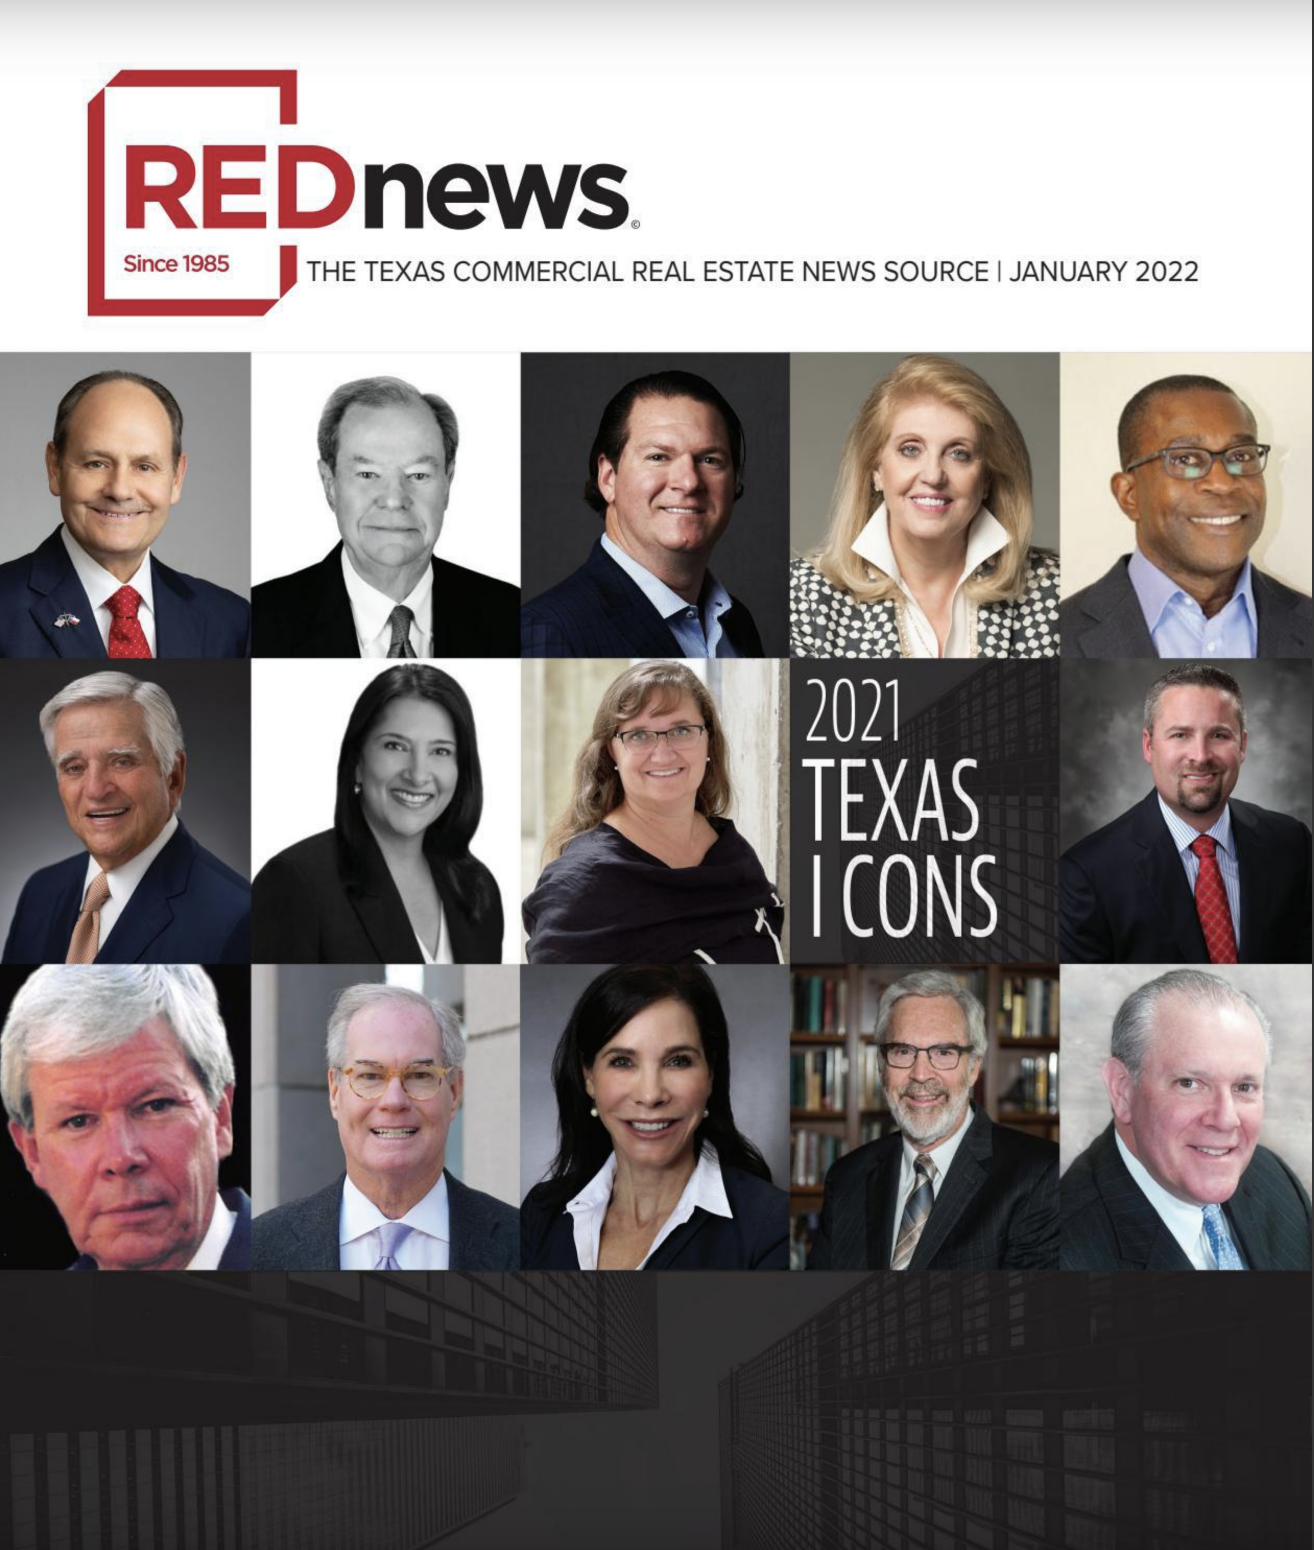 REDnews 2021 Texas icons